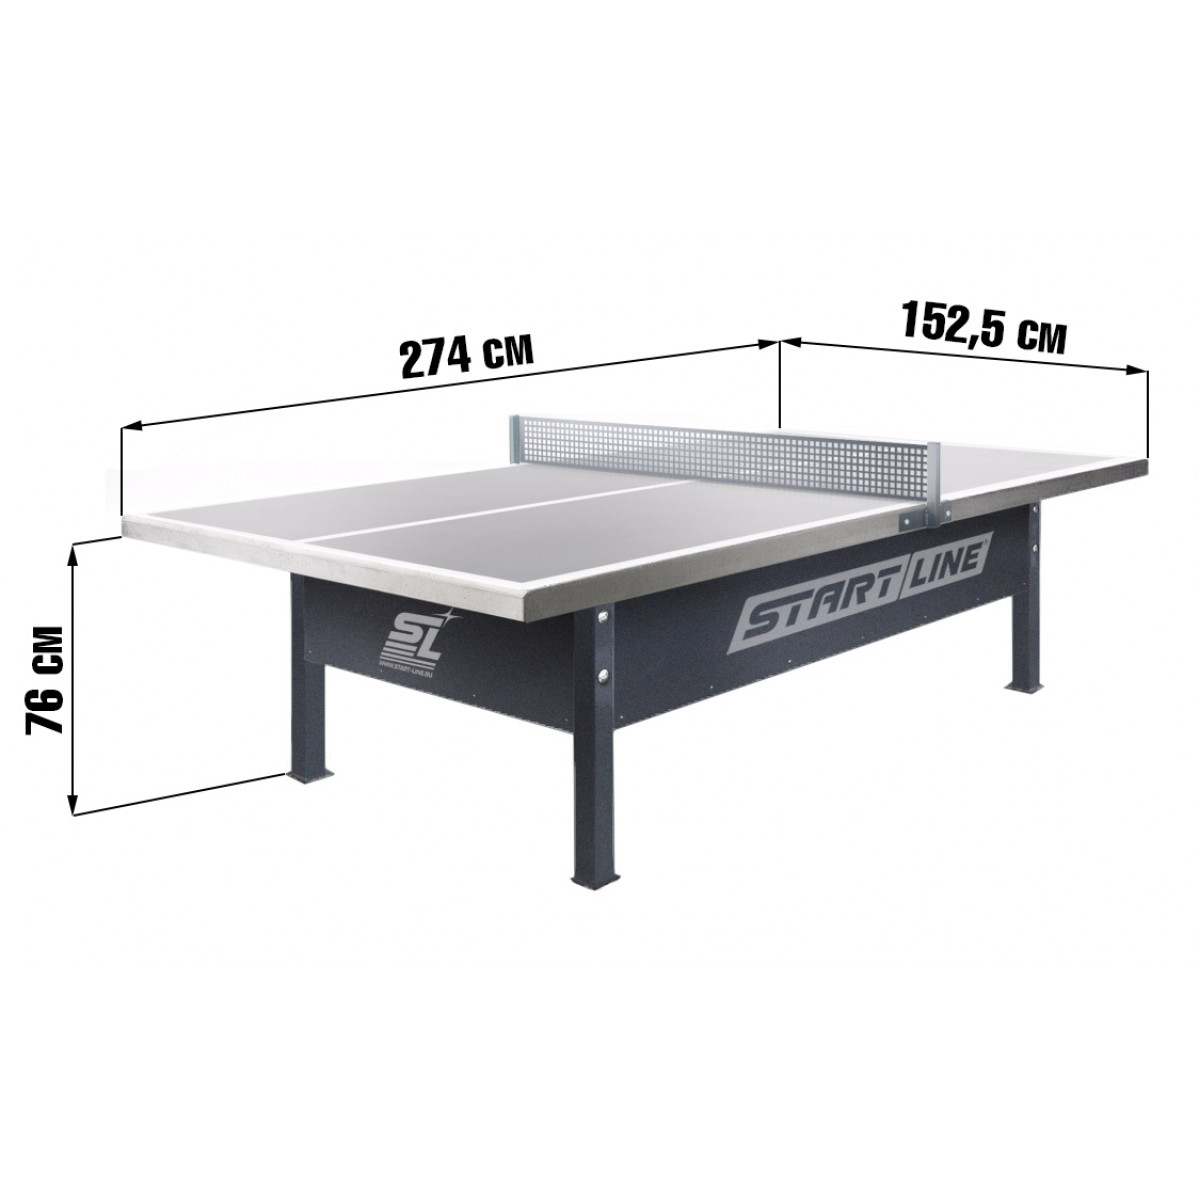 размер стола пинг понг